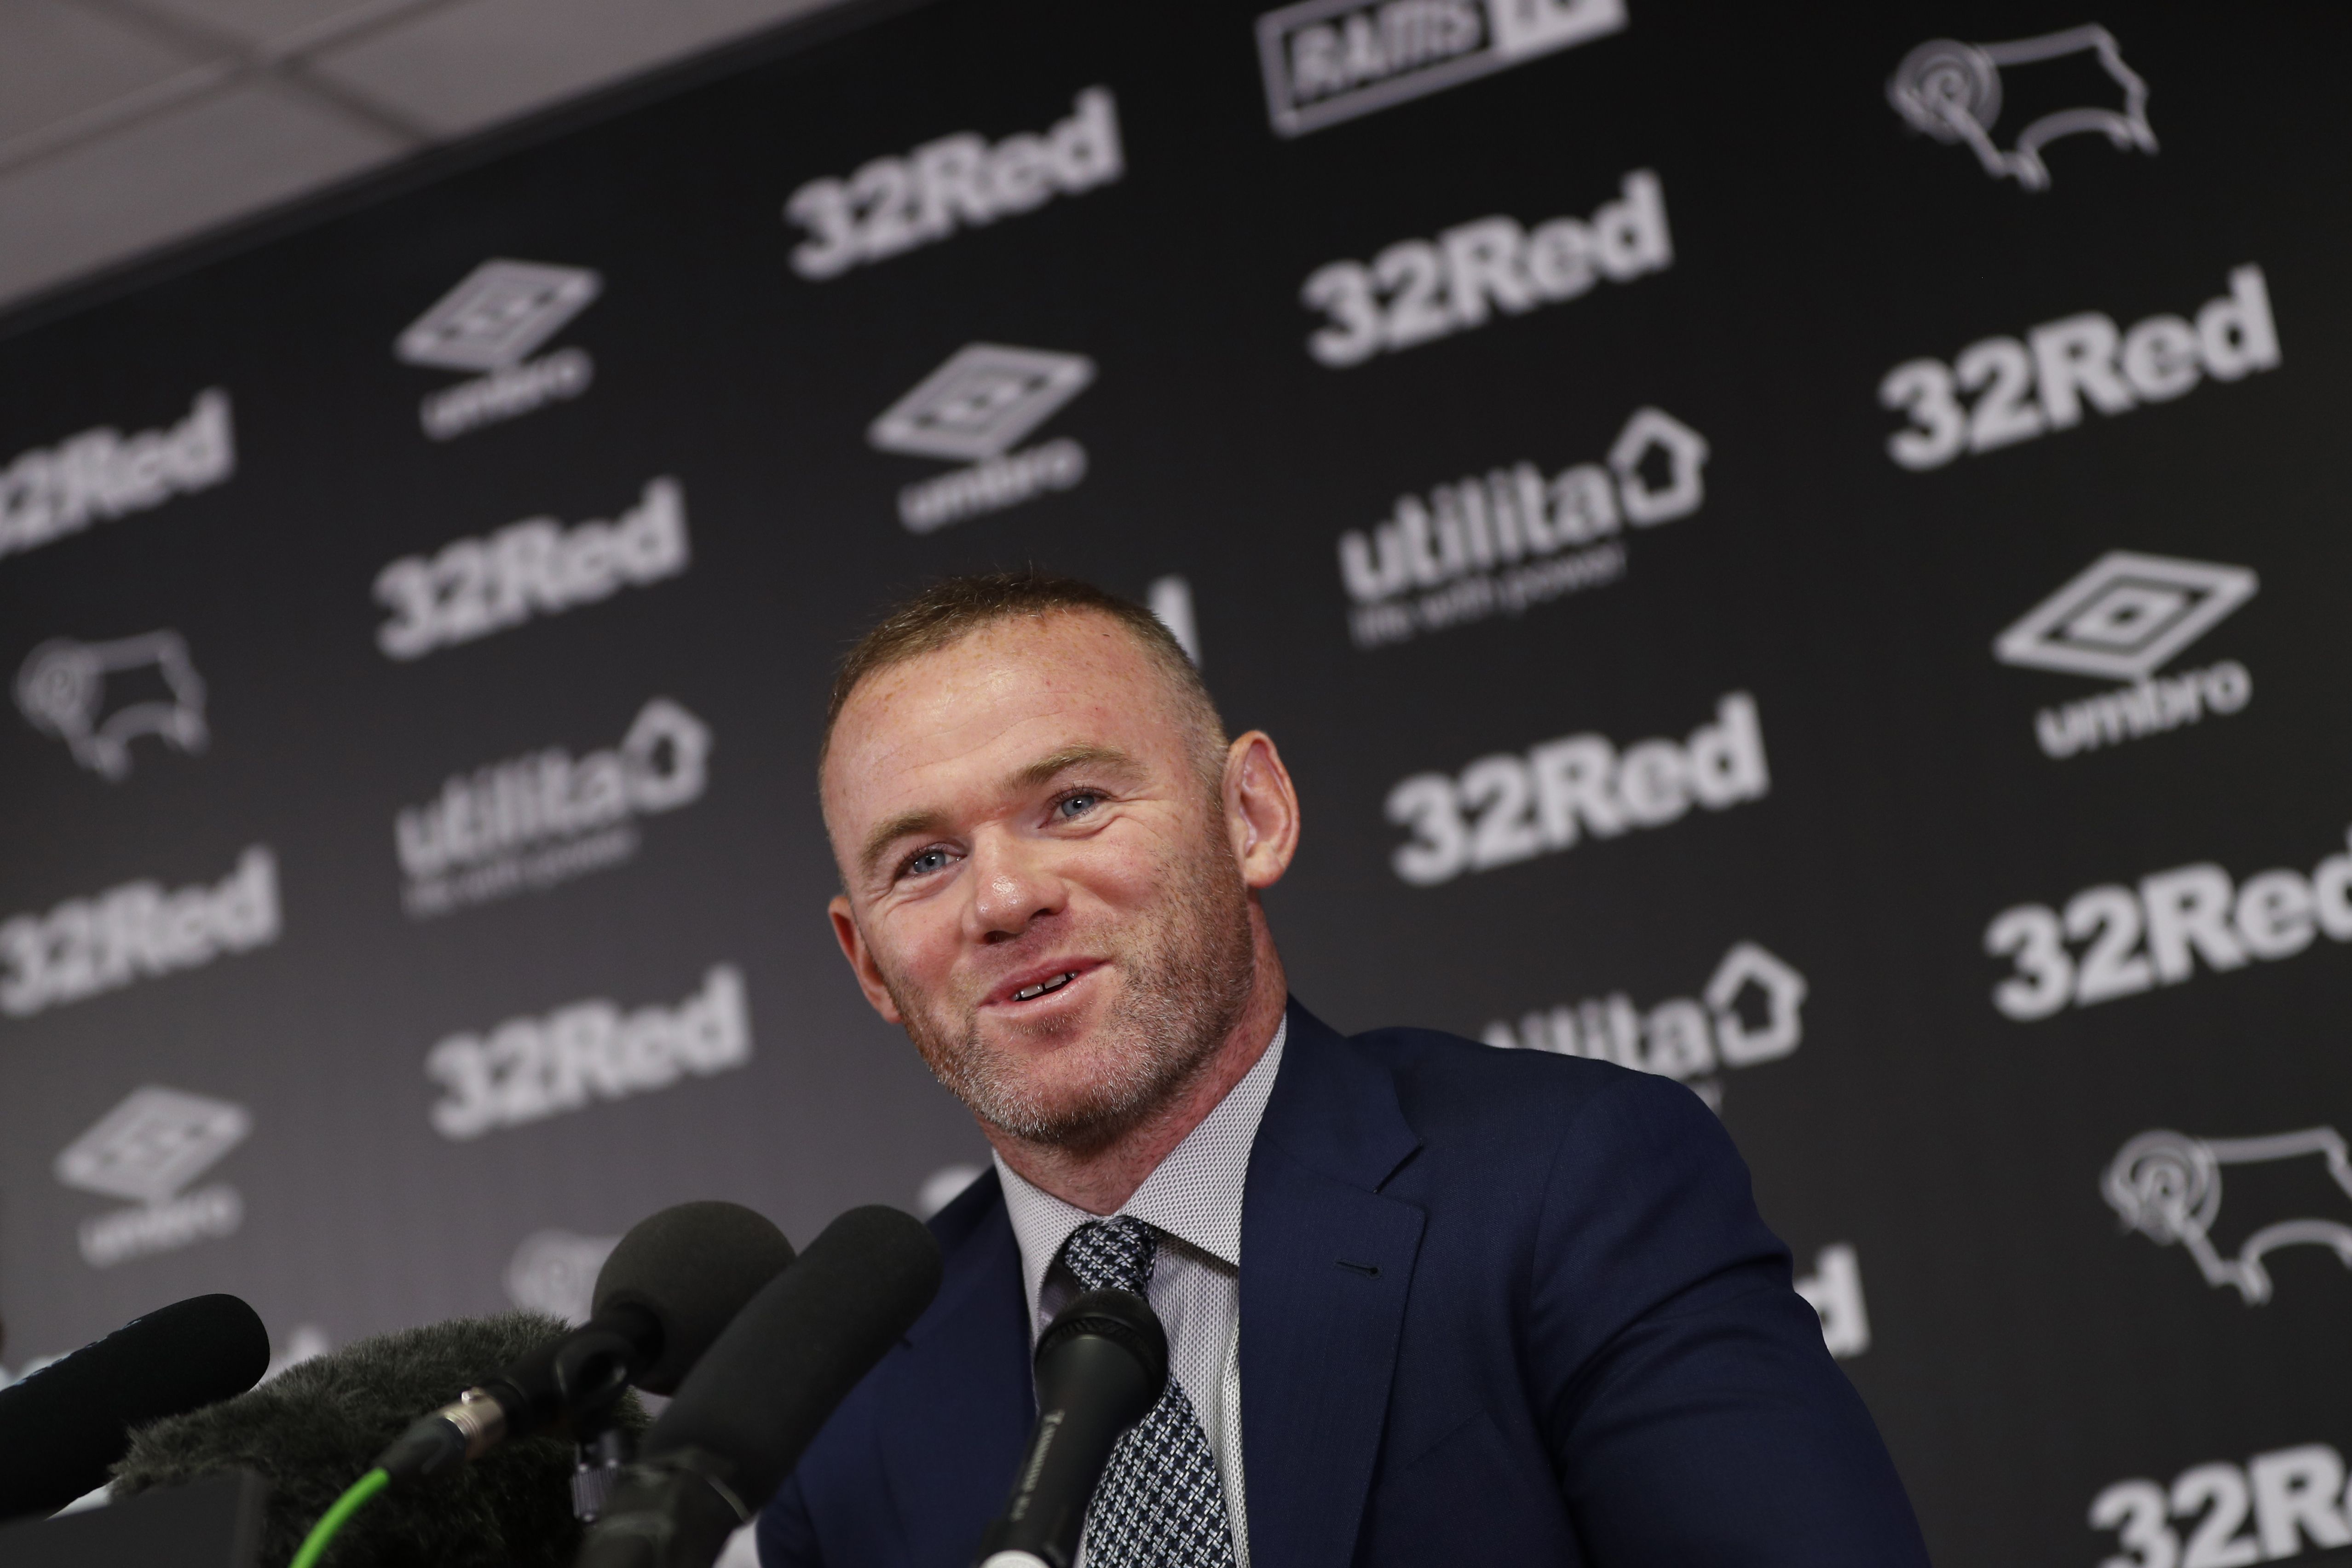 Wayne Rooney anunció su retiro como futbolista a los 35 años. (Foto Prensa Libre: AFP)